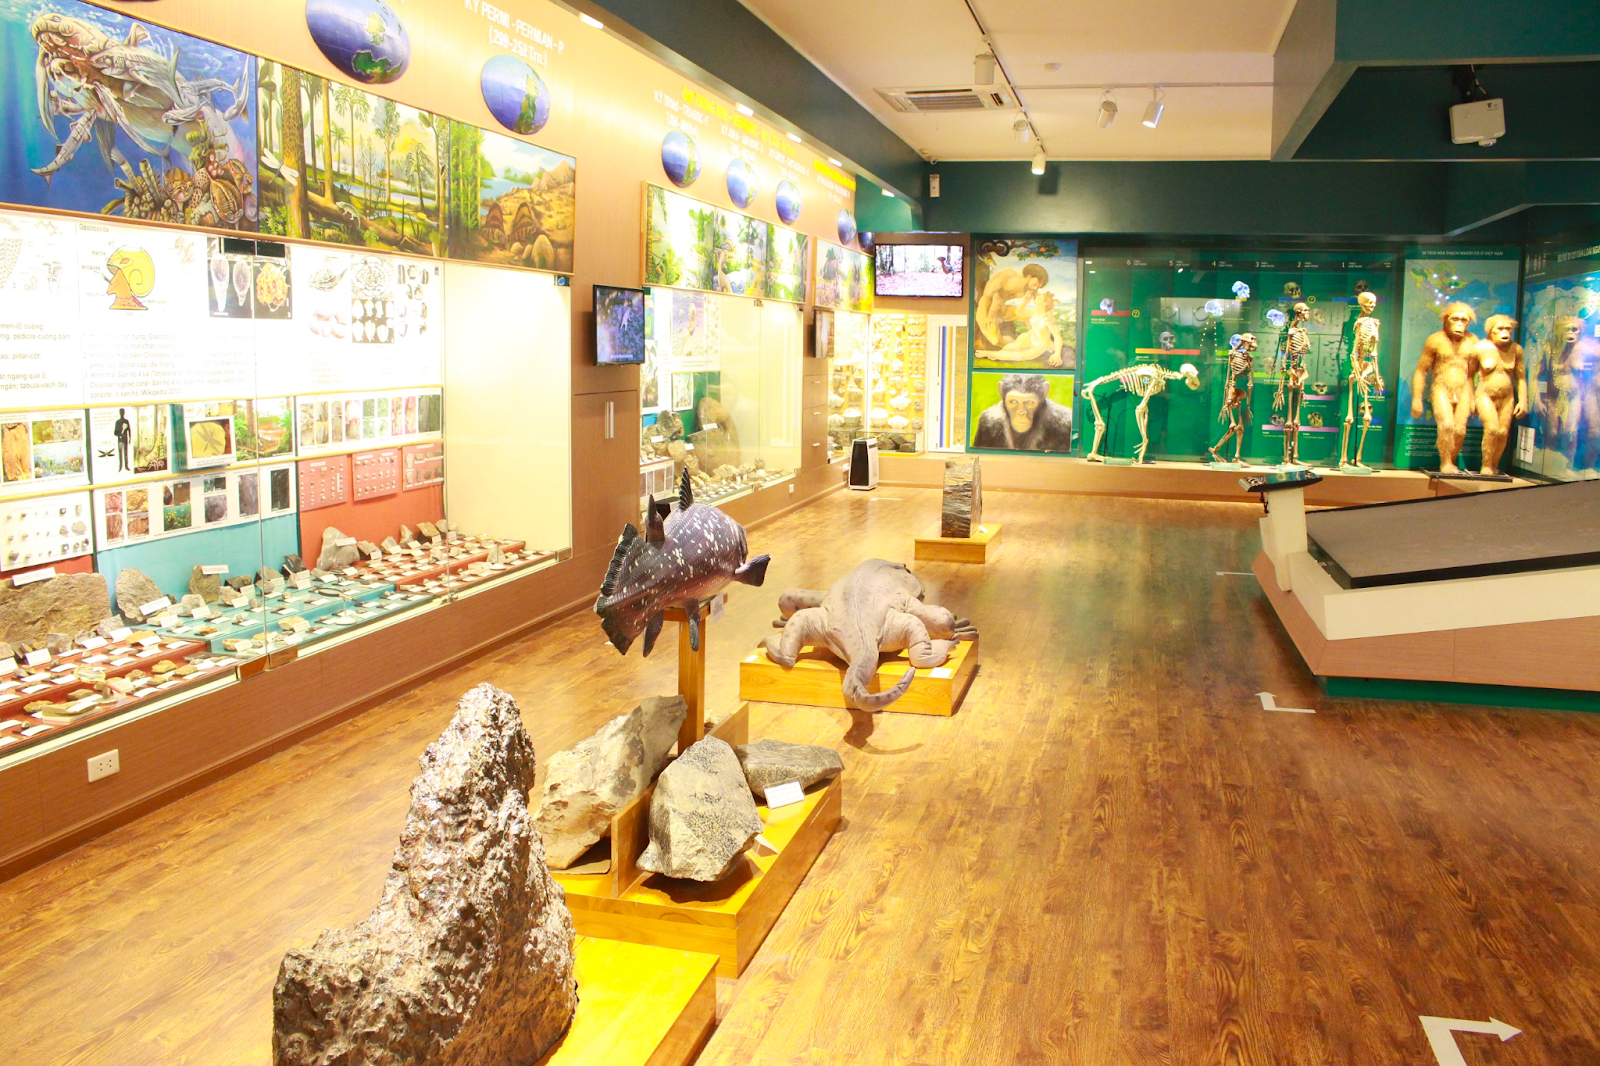 Bảo tàng thiên nhiên là nơi các bé có thể nâng cao kiến thức về sinh học, địa lý 